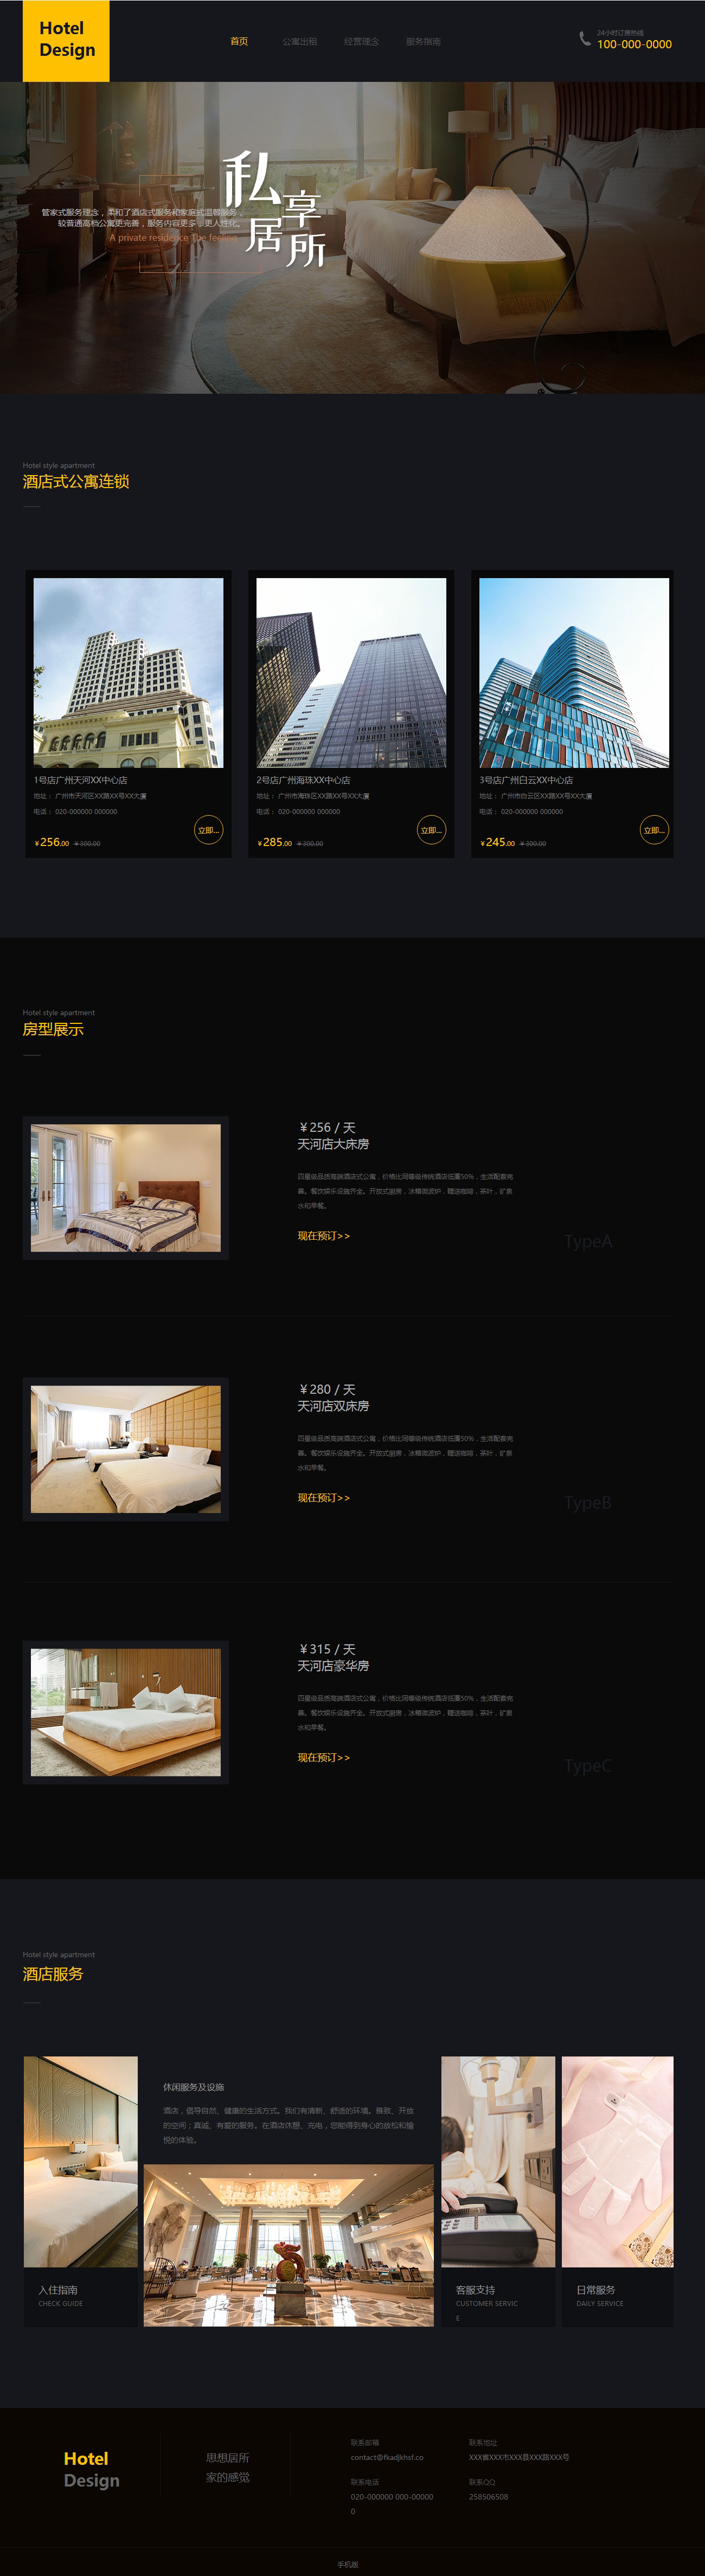 公寓出租、酒店式在线支付网站模板